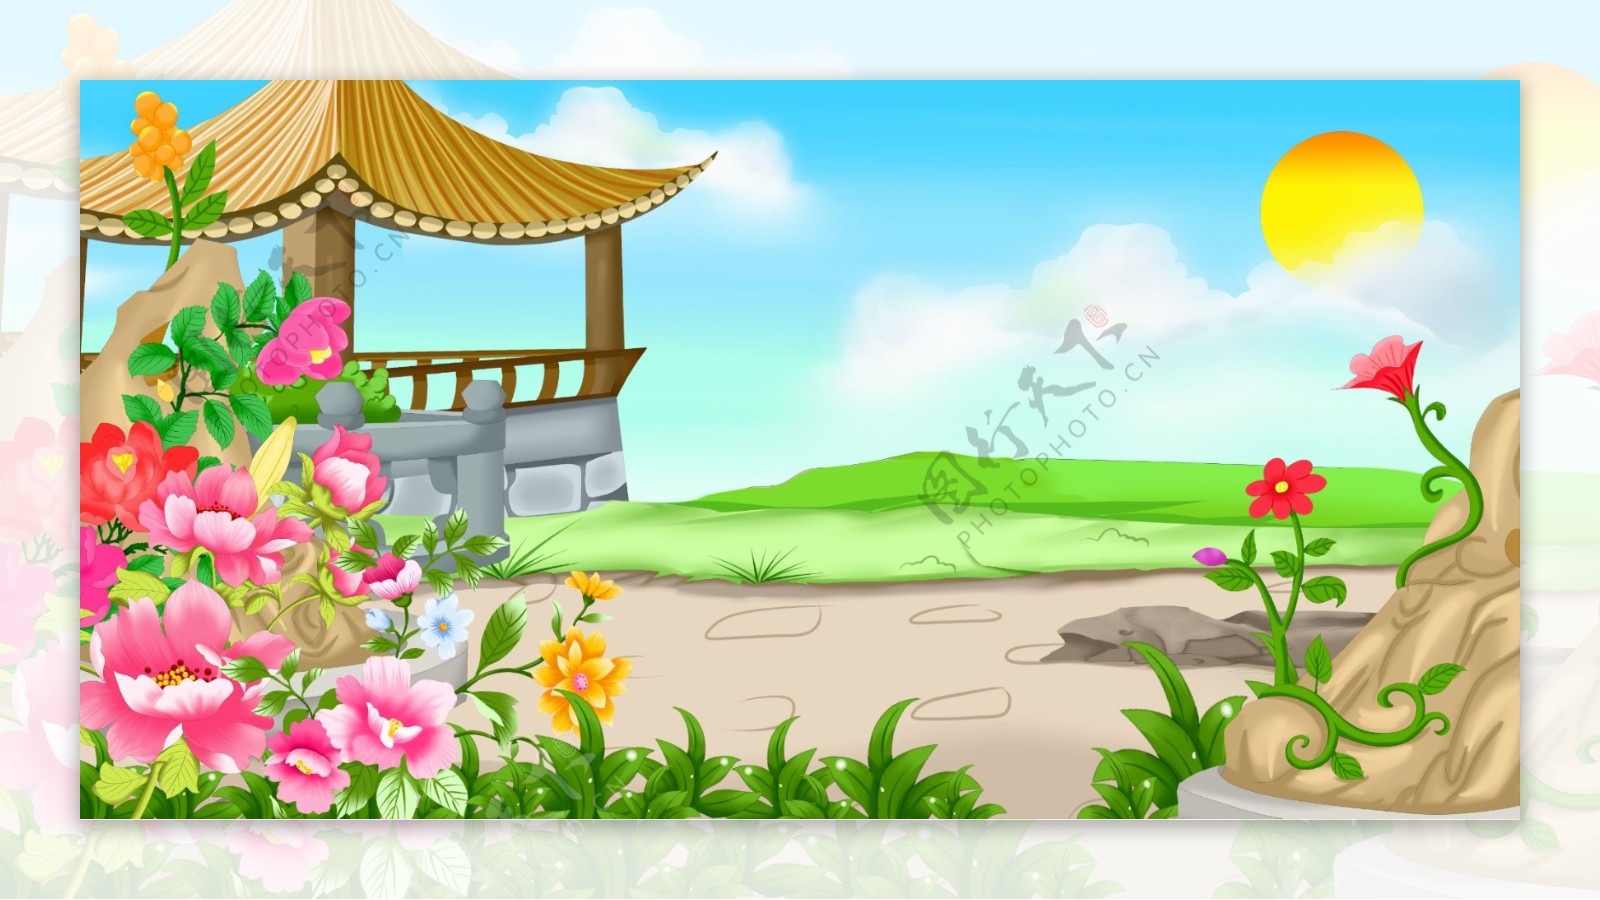 中国风野外凉亭背景设计